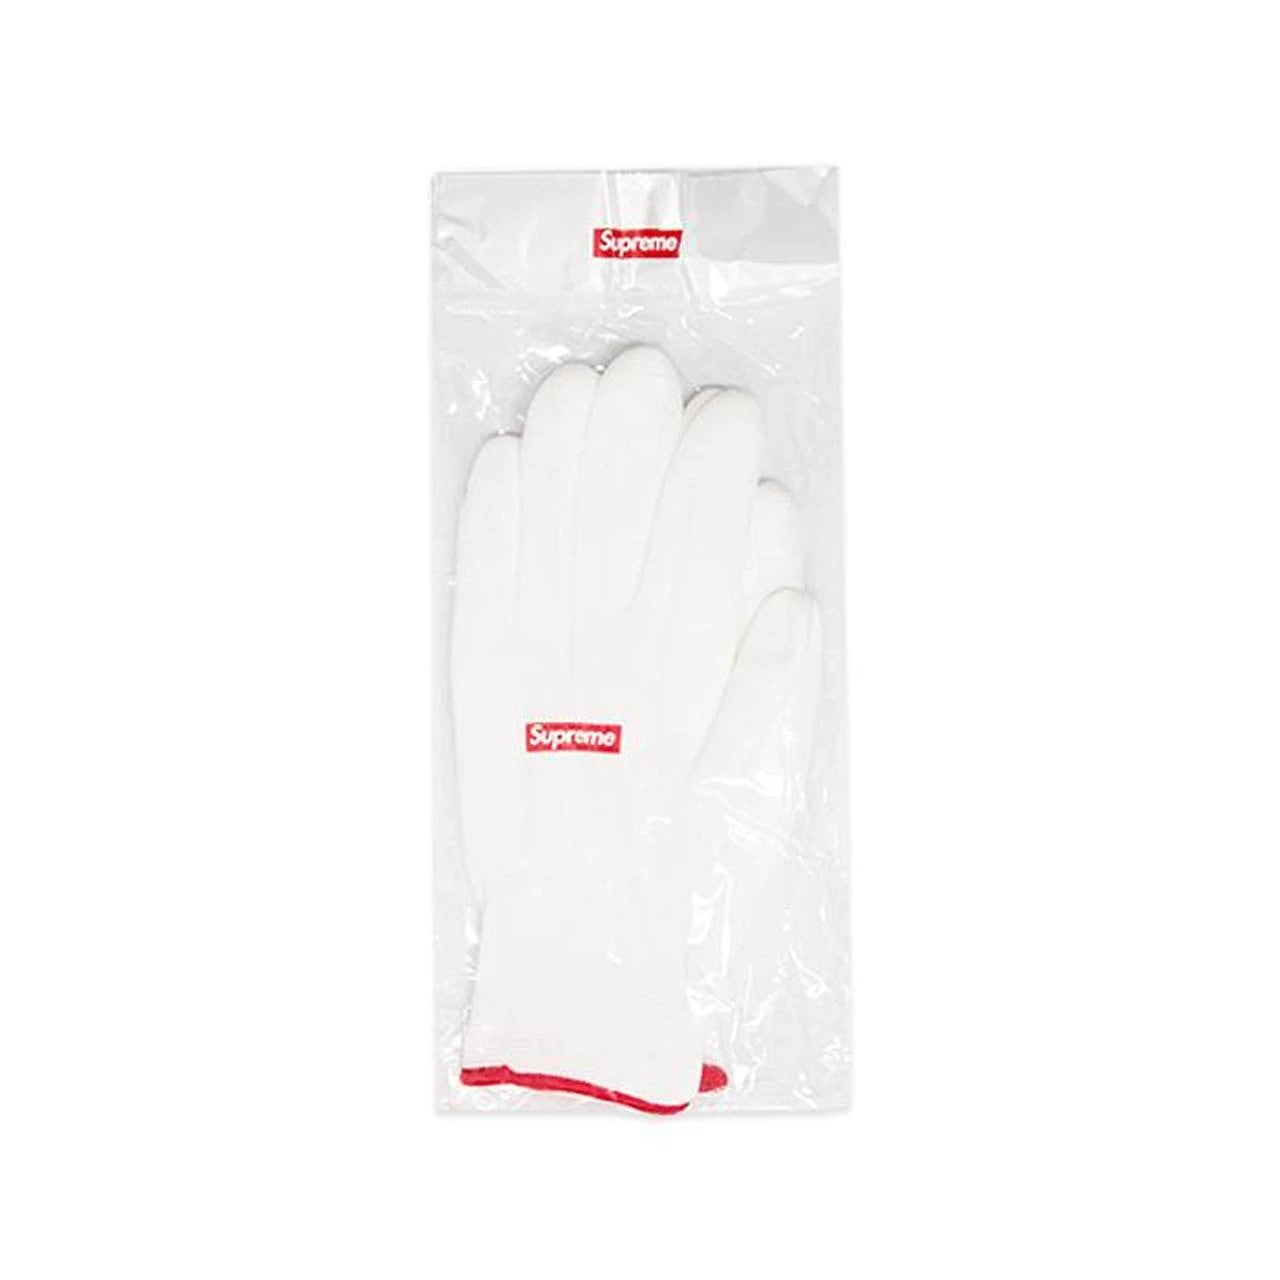 Supreme Rubberized Gloves - White